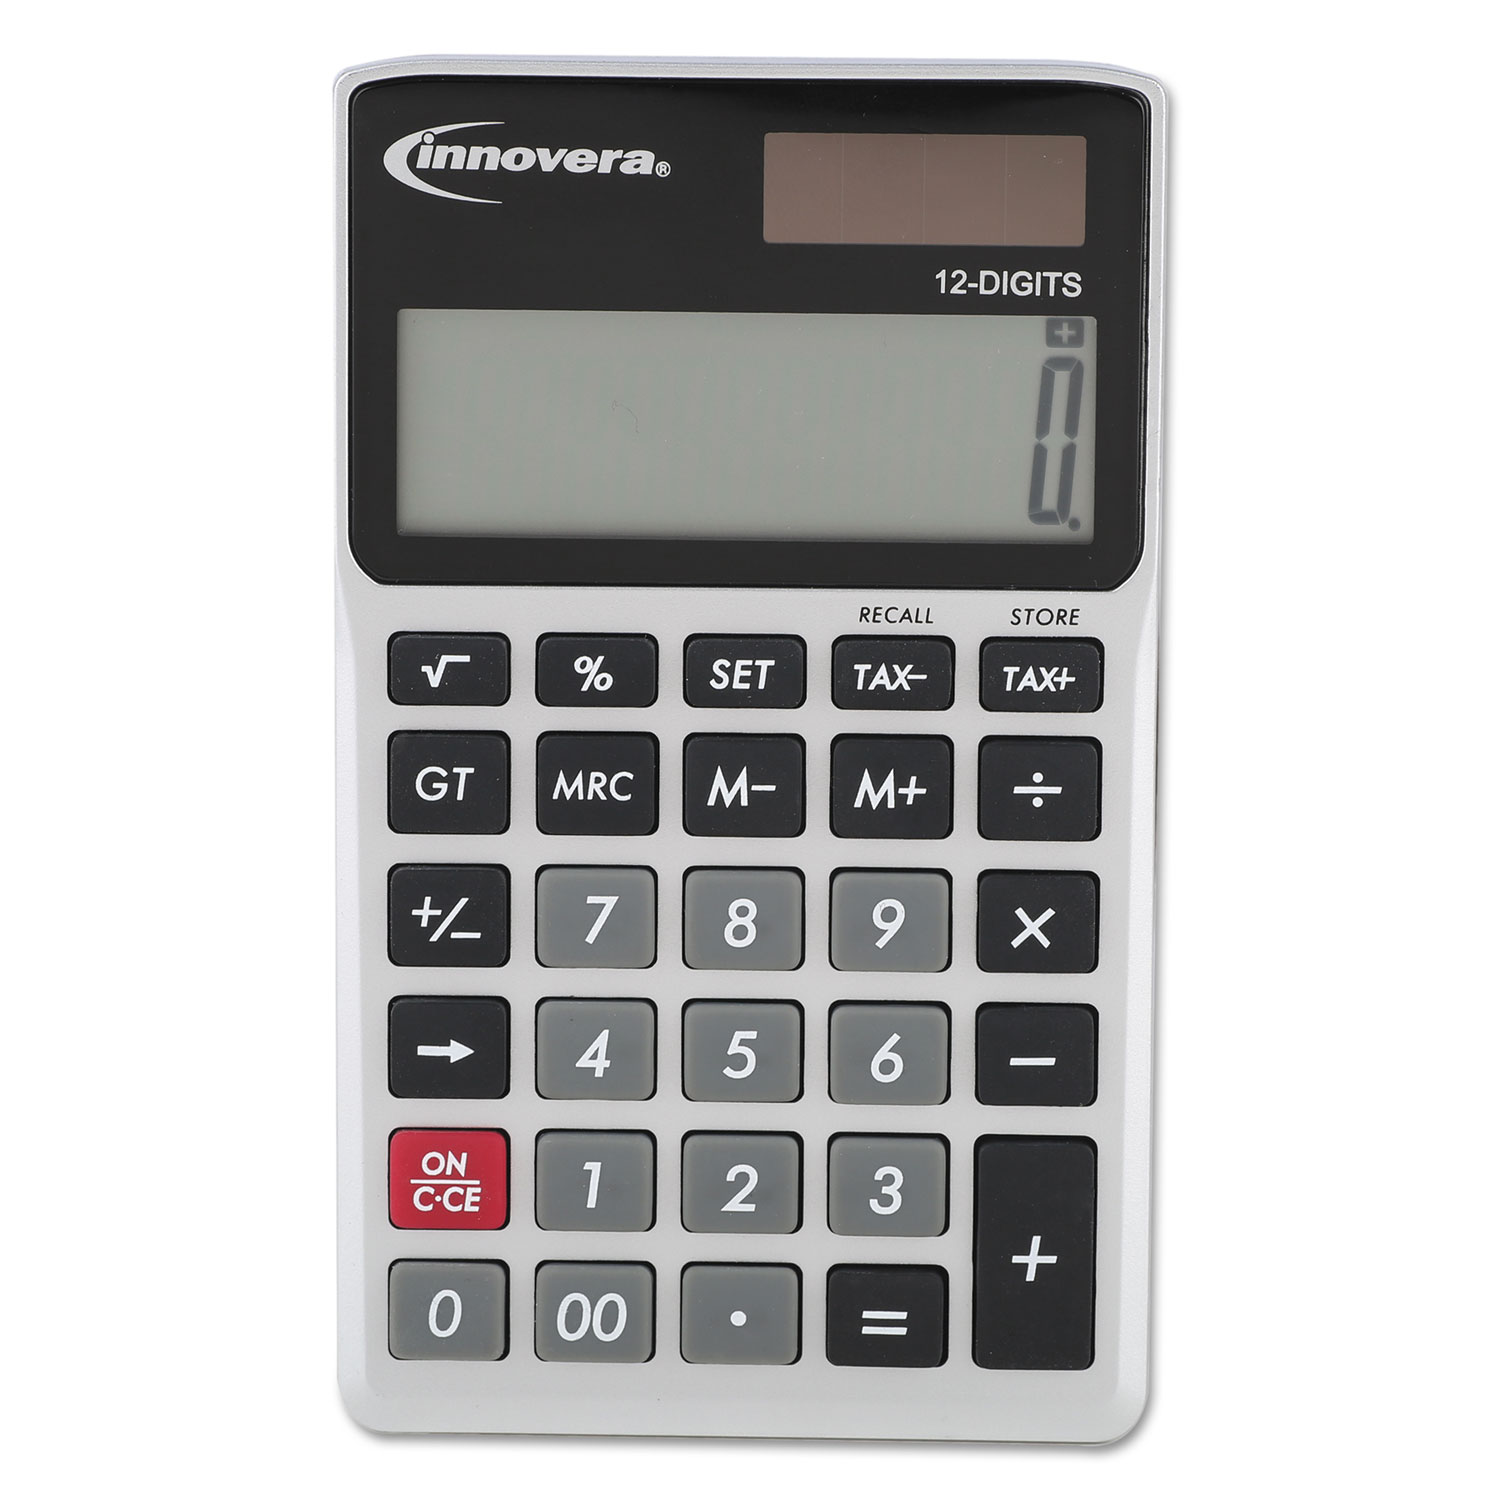 Handheld Calculator, 12-Digit LCD